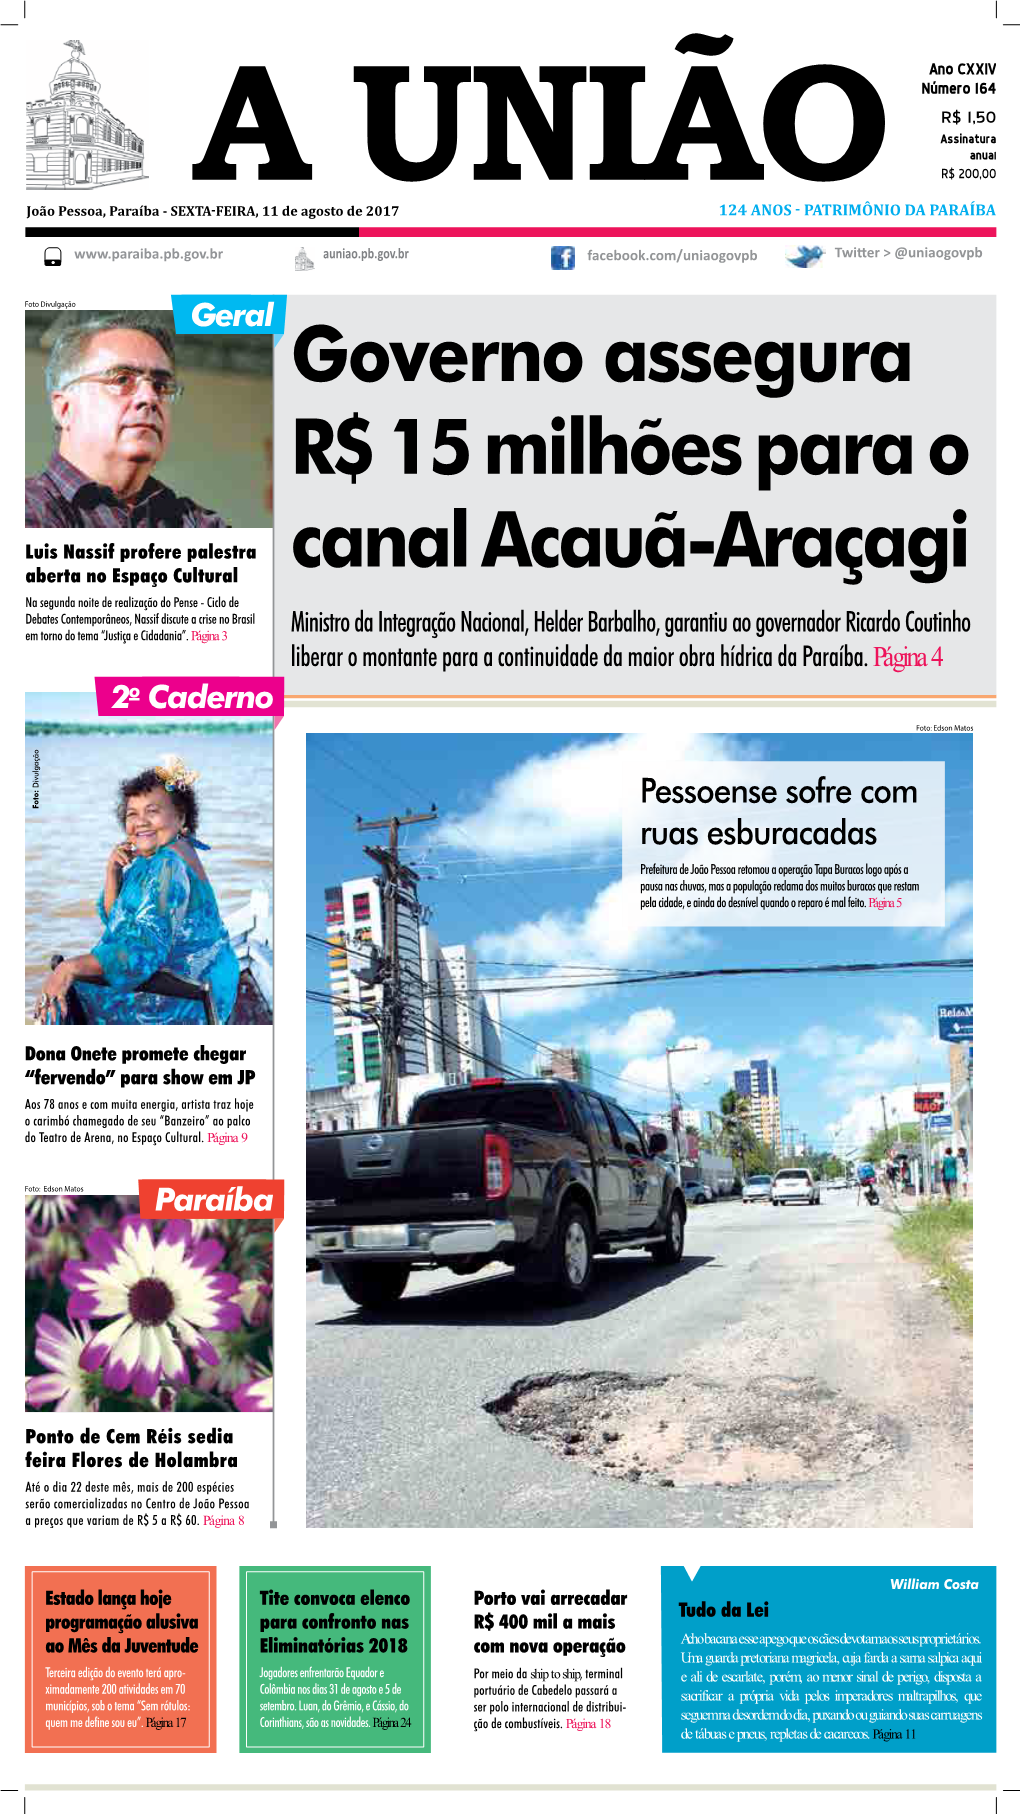 Governo Assegura R$ 15 Milhões Para O Canal Acauã-Araçagi